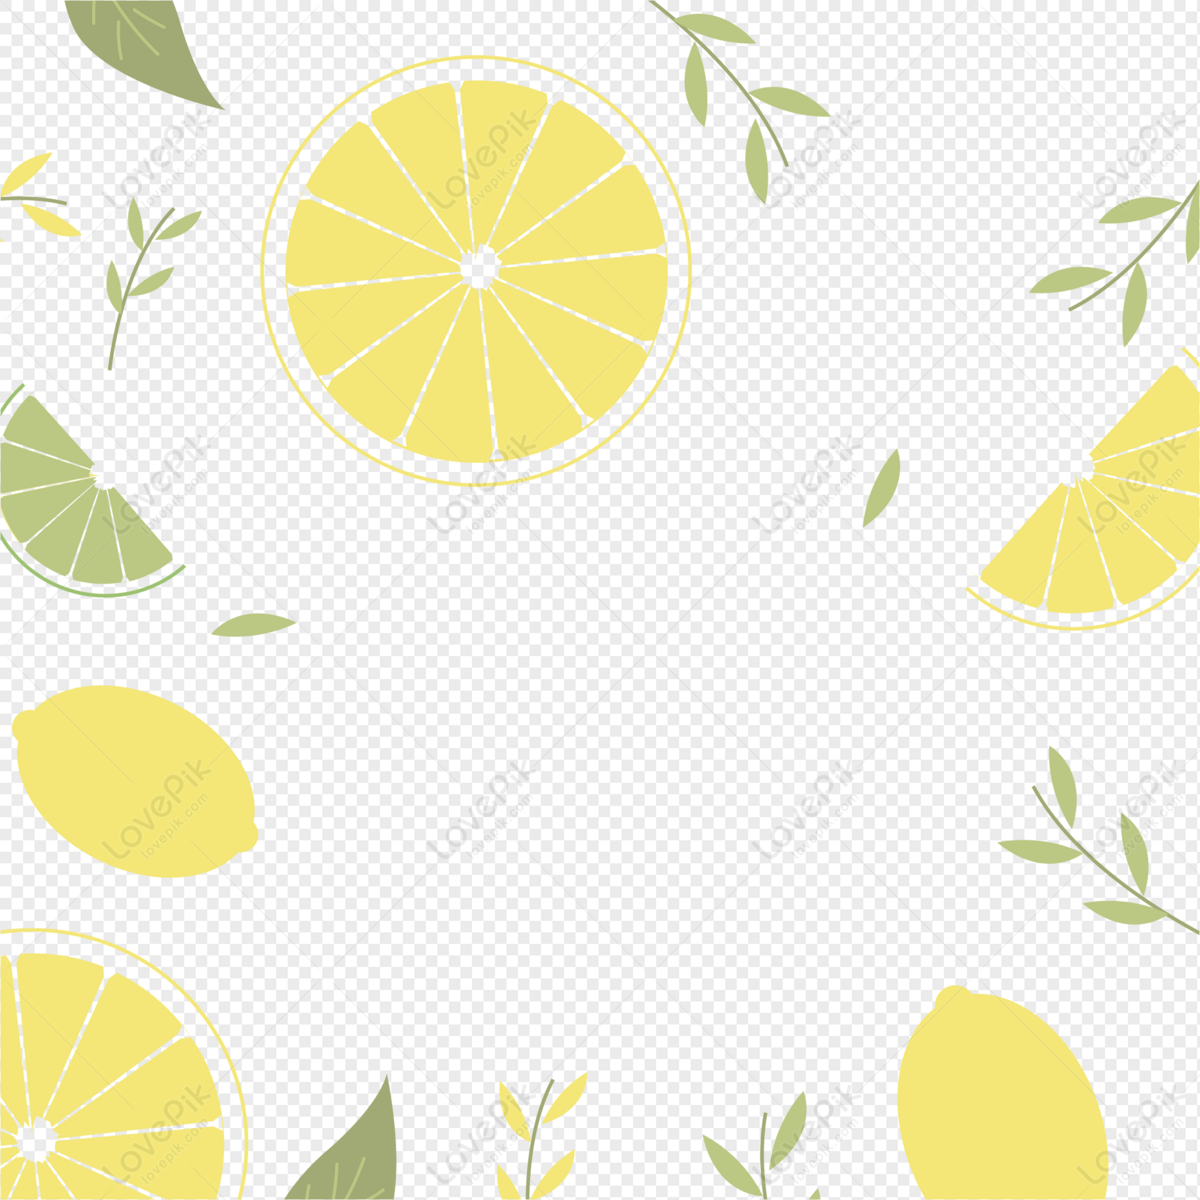 Lemon nền trang trí: Lemon vừa có mùi thơm ngát, vừa có màu sắc tươi sáng, rất thích hợp để trang trí cho căn phòng của bạn. Hãy xem những hình ảnh về trái lemon đầy sáng tạo và ấn tượng, tin rằng bạn sẽ thấy nó cực kỳ thú vị.